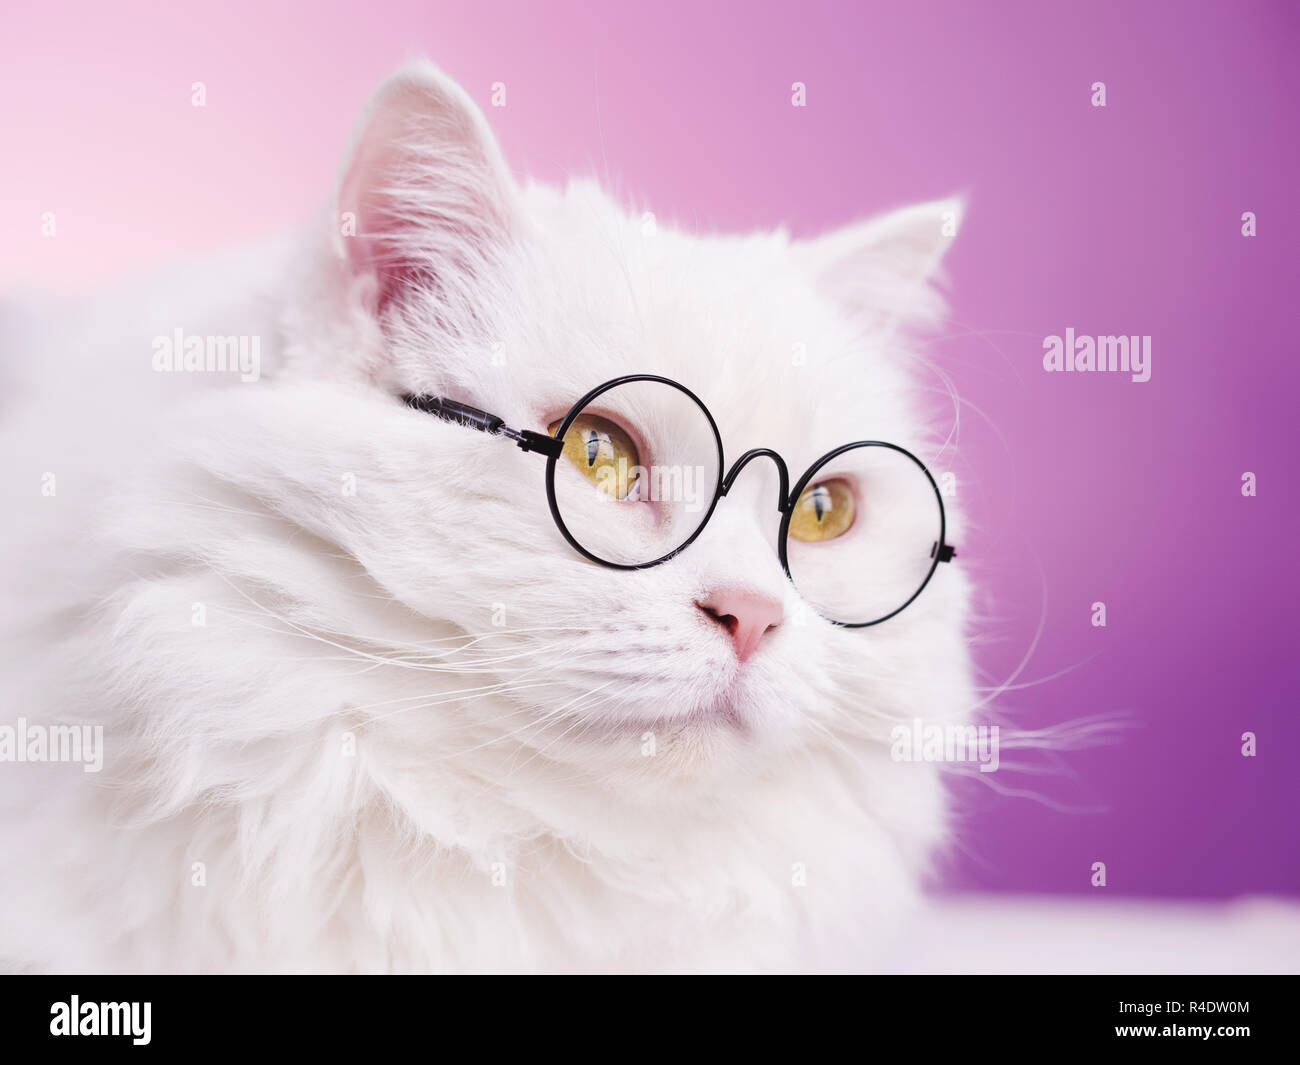 Les soigne scientist cat pose sur fond rose mur. Fermer portrait de chaton moelleux en transparent lunettes rondes. L'éducation, la science, la connaissance concept. Banque D'Images